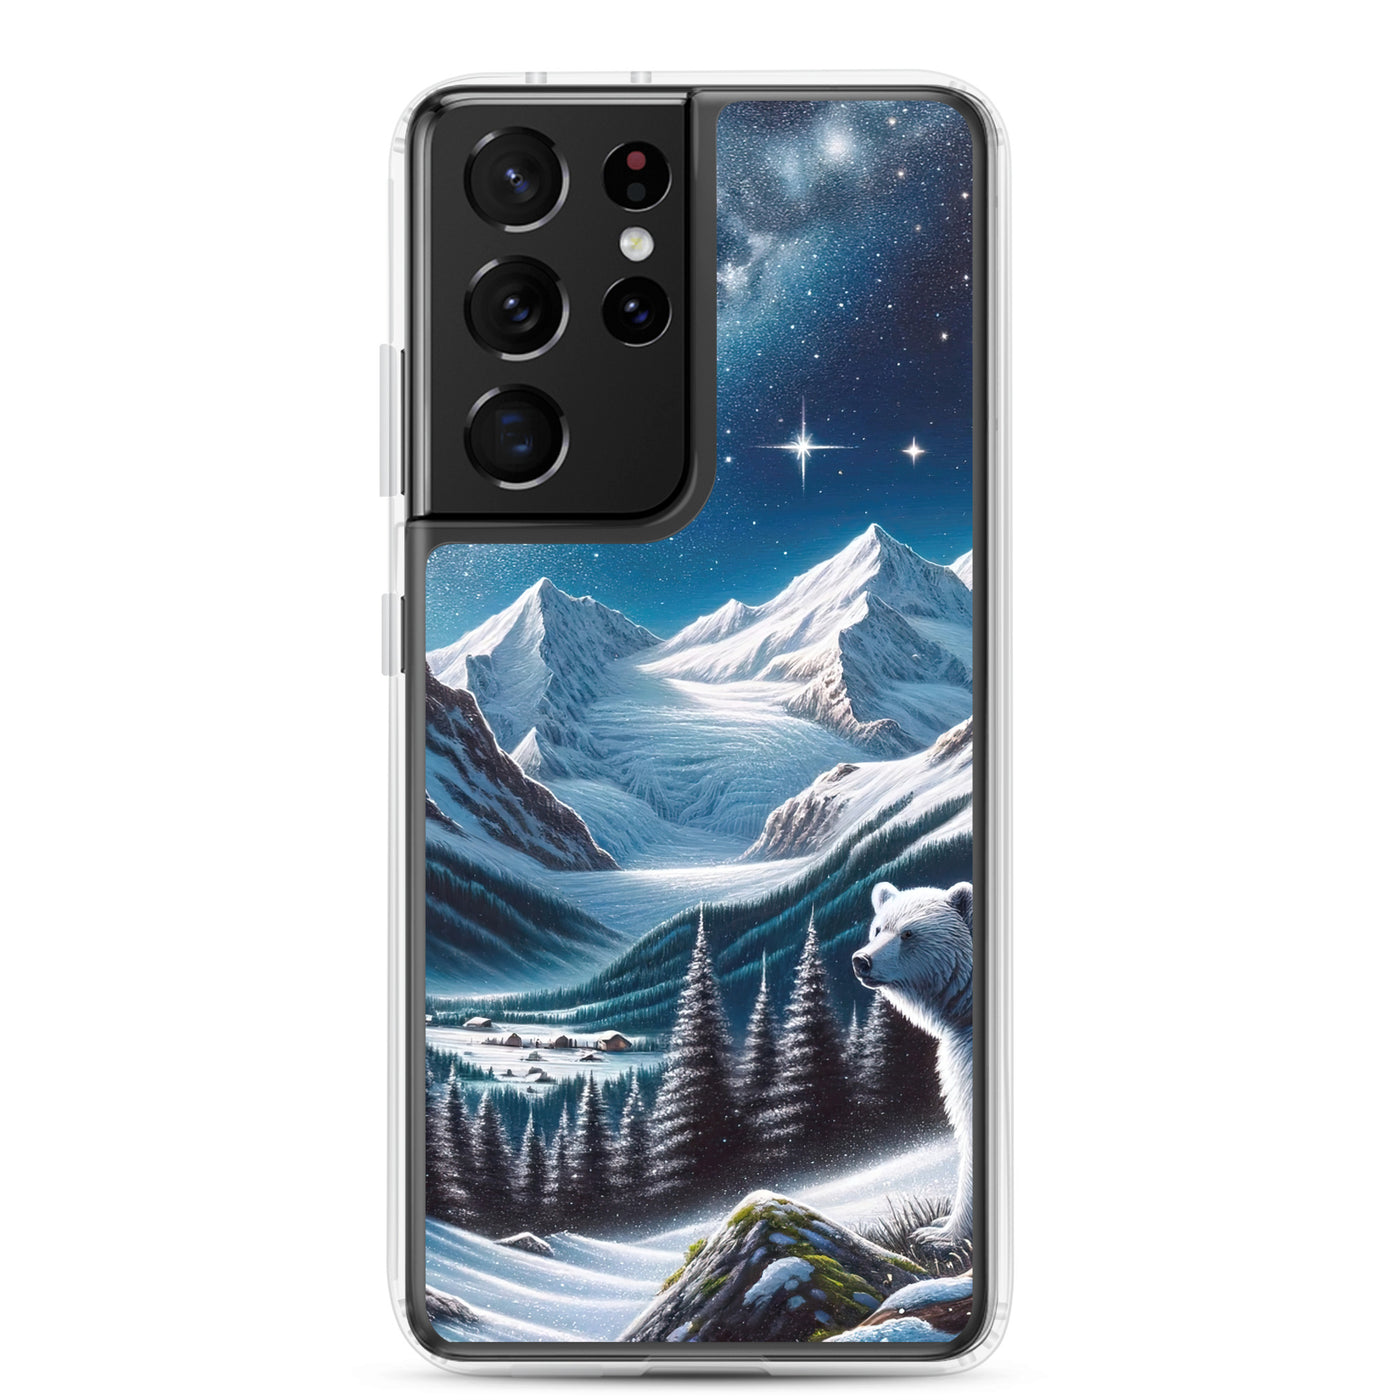 Sternennacht und Eisbär: Acrylgemälde mit Milchstraße, Alpen und schneebedeckte Gipfel - Samsung Schutzhülle (durchsichtig) camping xxx yyy zzz Samsung Galaxy S21 Ultra